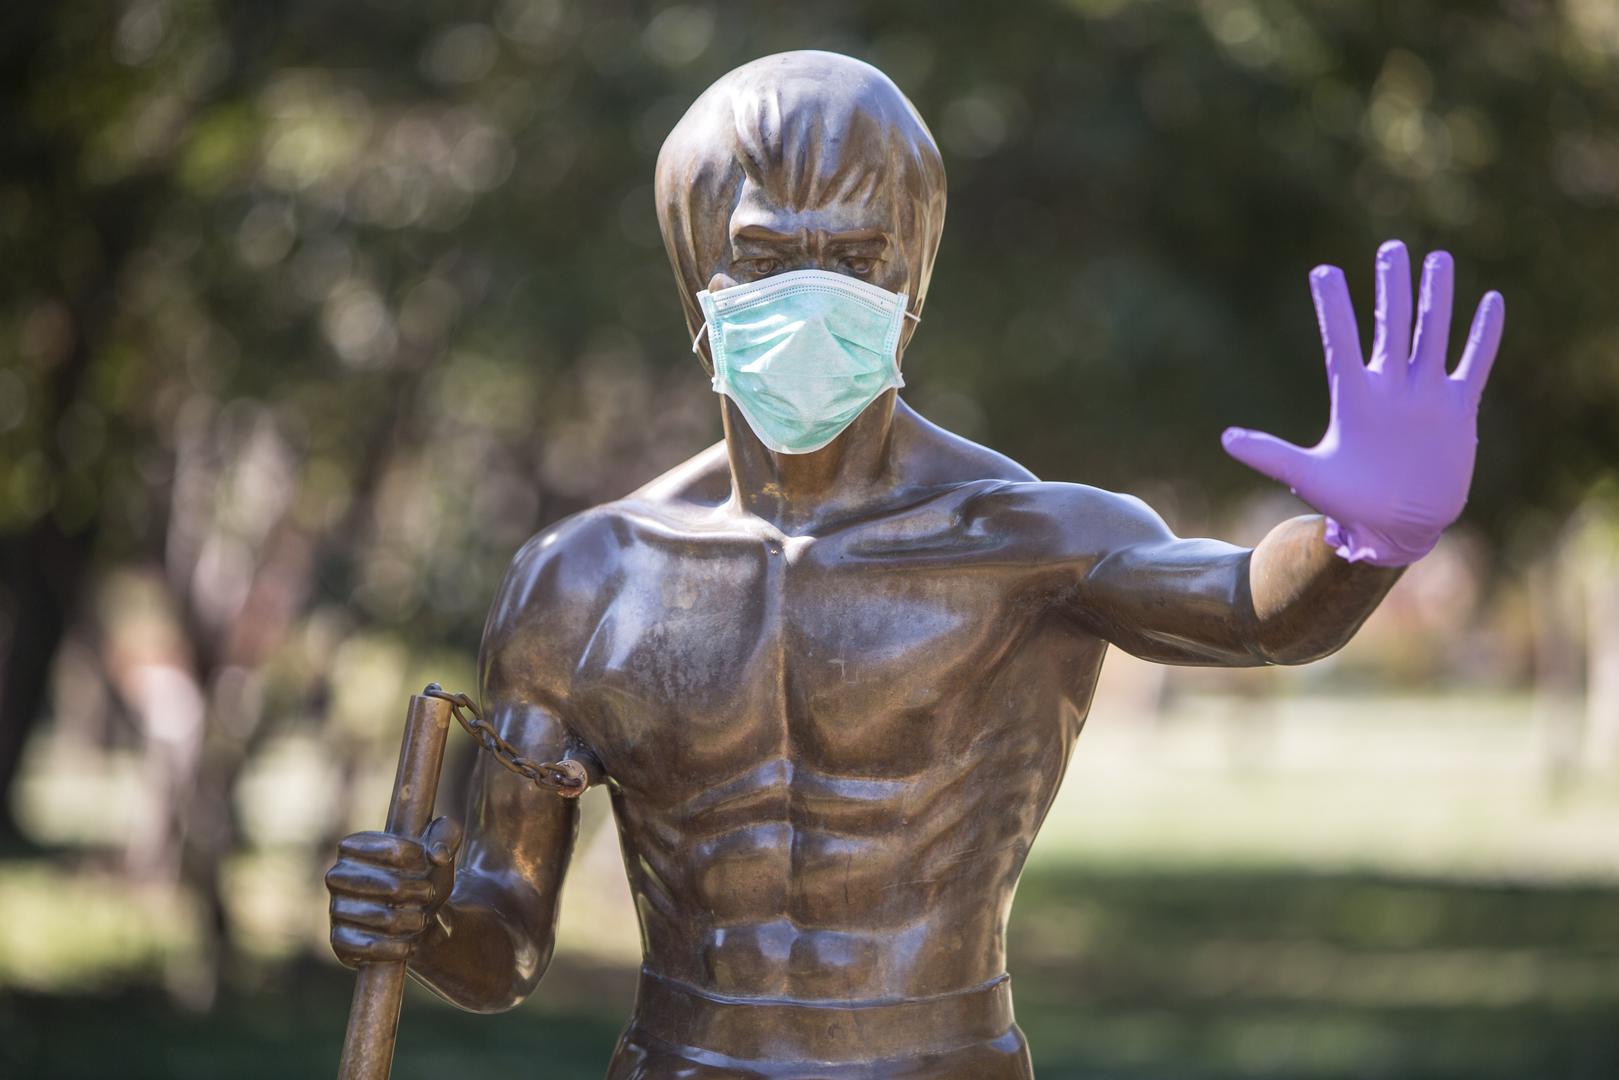 I kip Brucea Leeja u Mostaru (djelo Ivana Fijolića) za vrijeme epidemije dobio je masku i rukavice